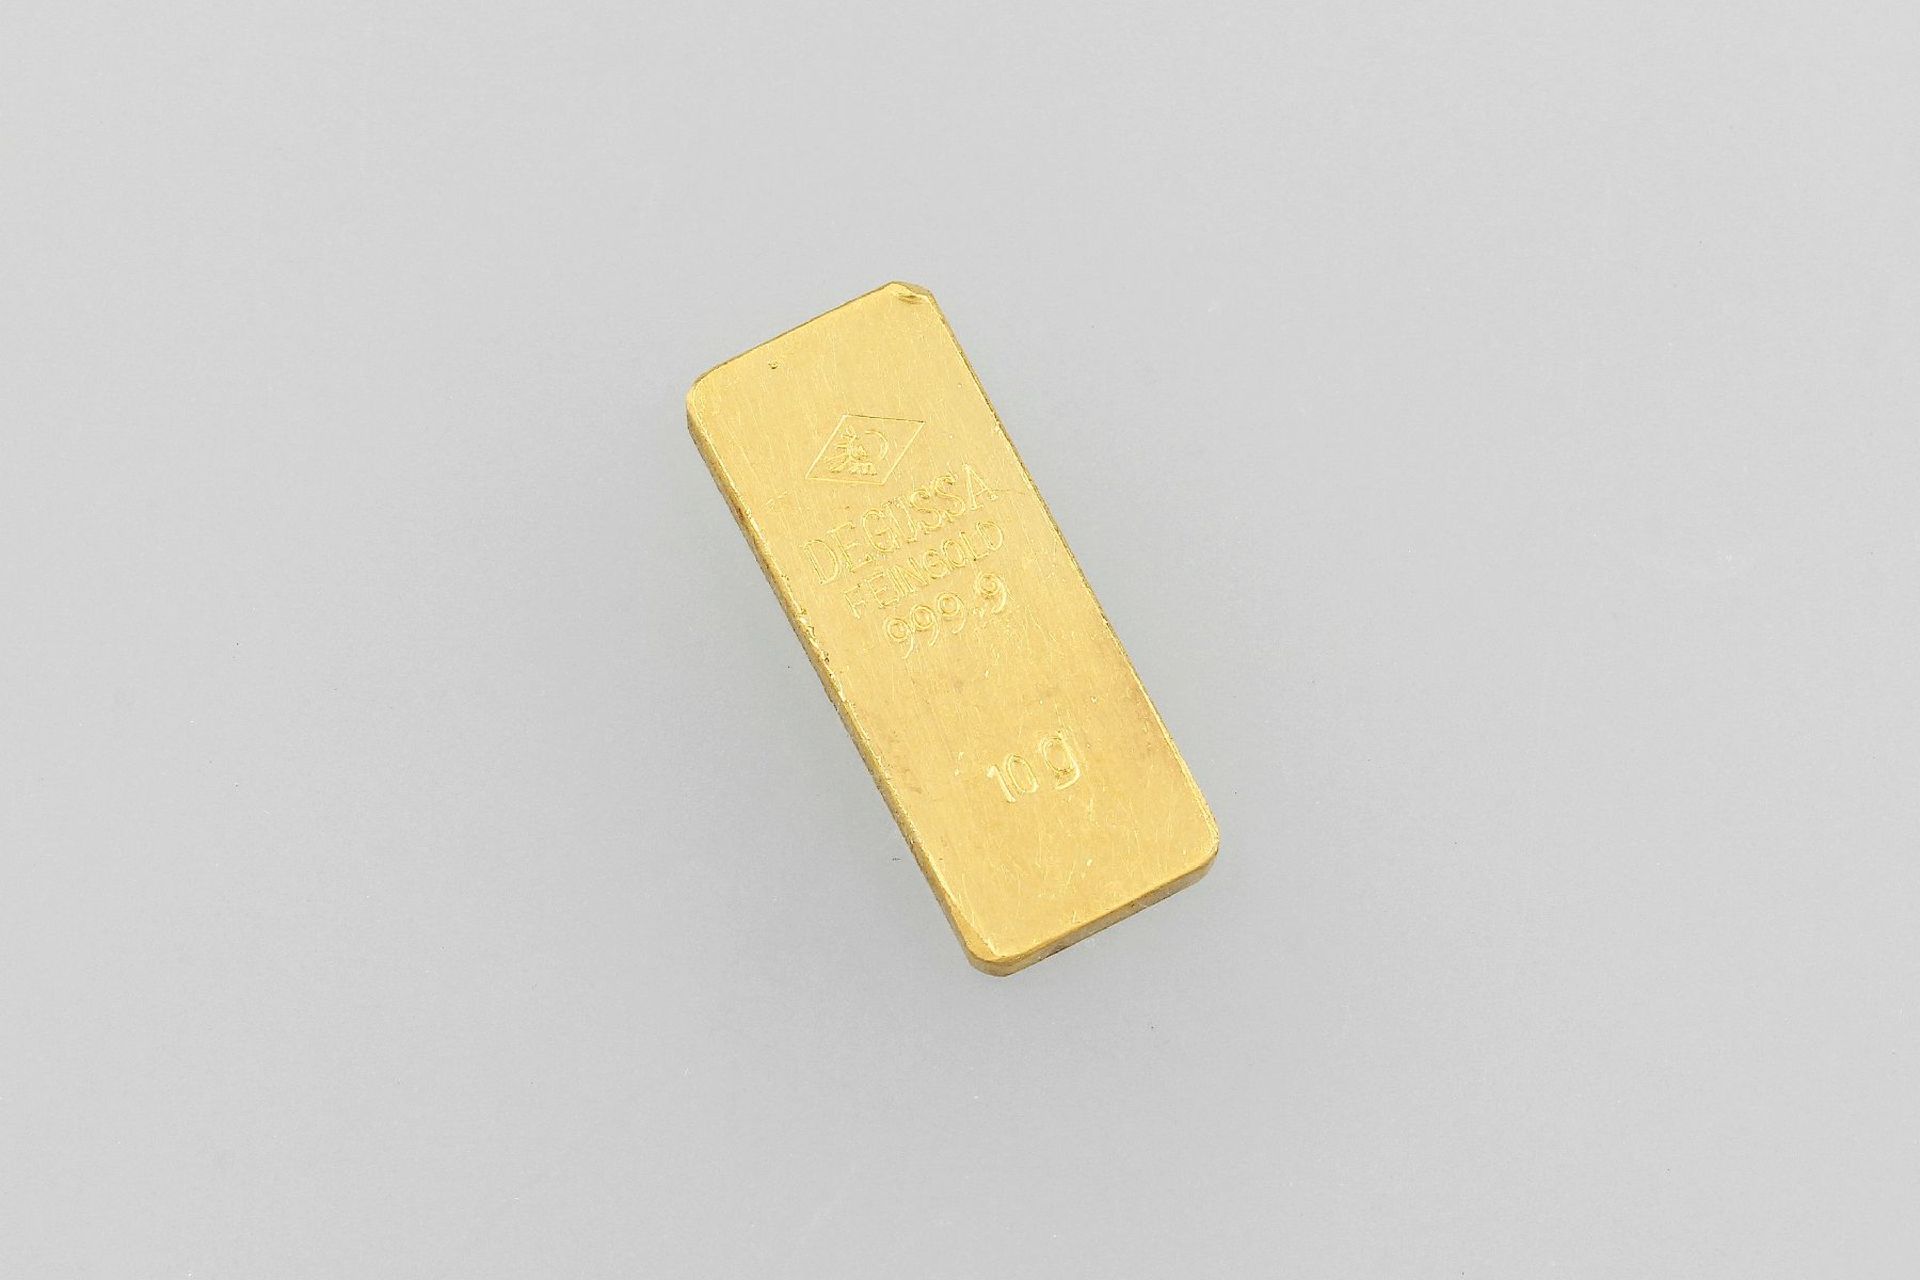 DEGUSSA Feingold Barren, 999.9, 10 gDEGUSSA fine gold bar, 999.9, 10 g